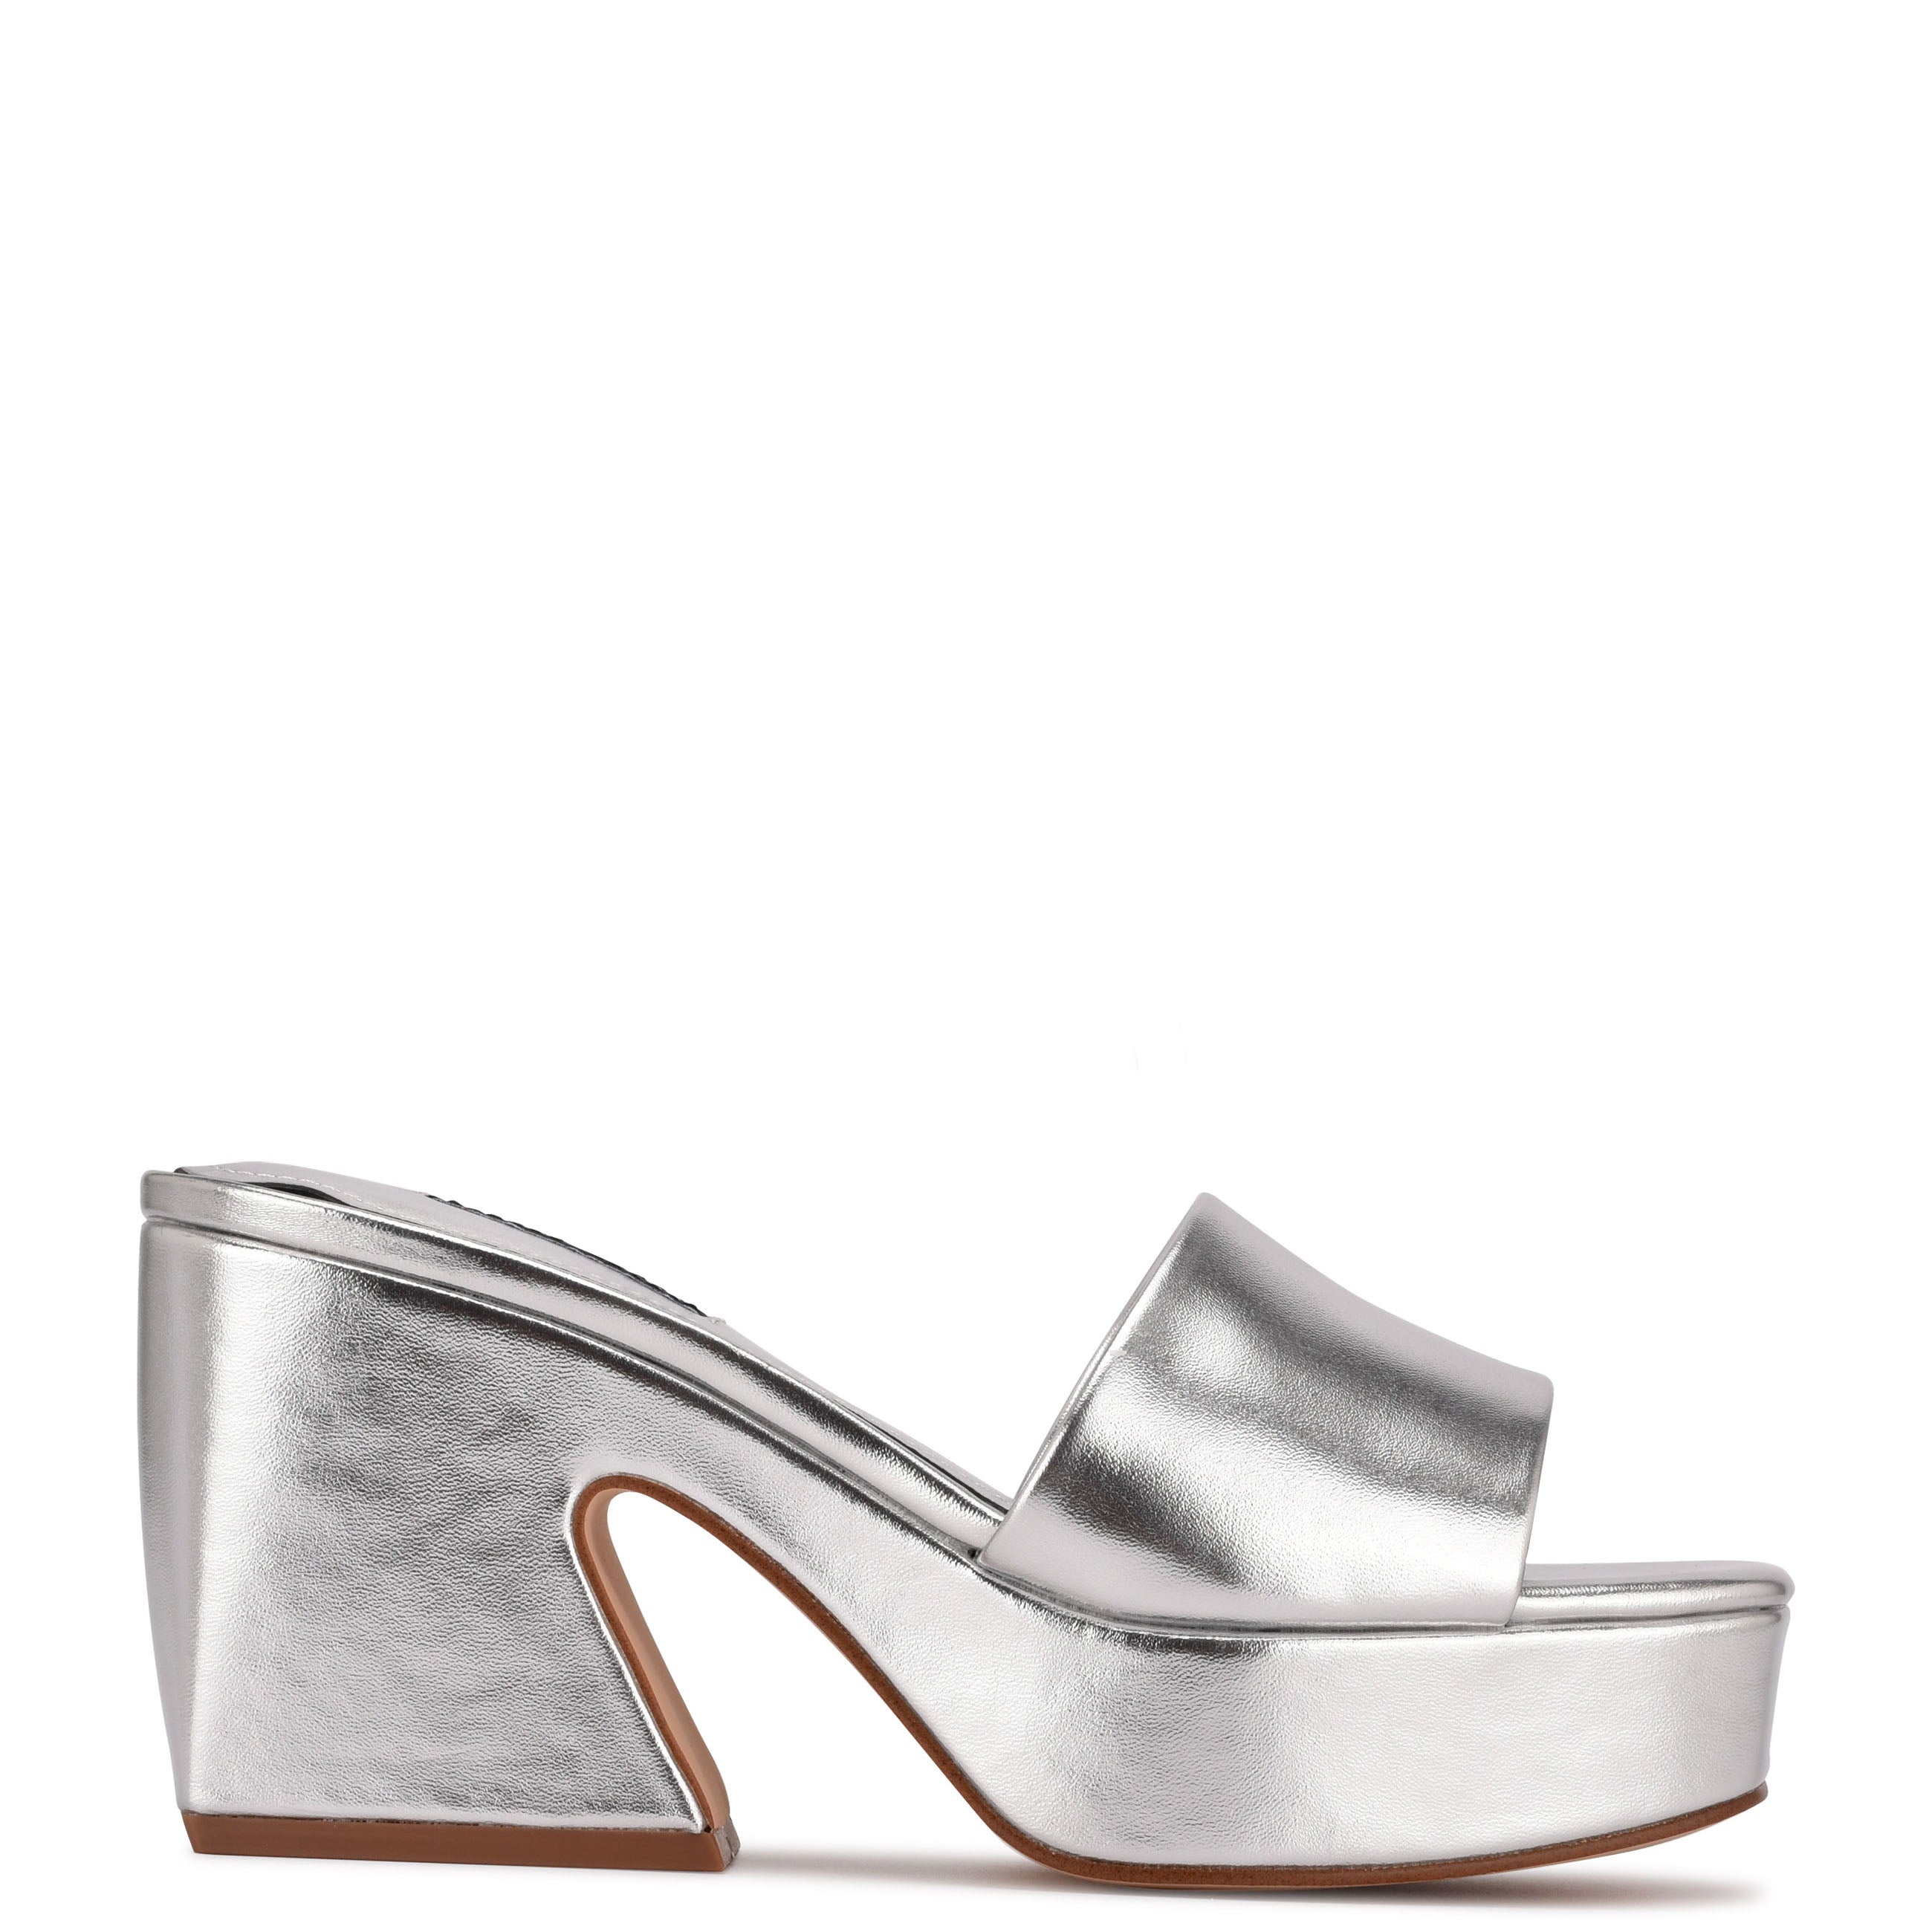 Grey Women Sandals With Heels | WalkTrendy